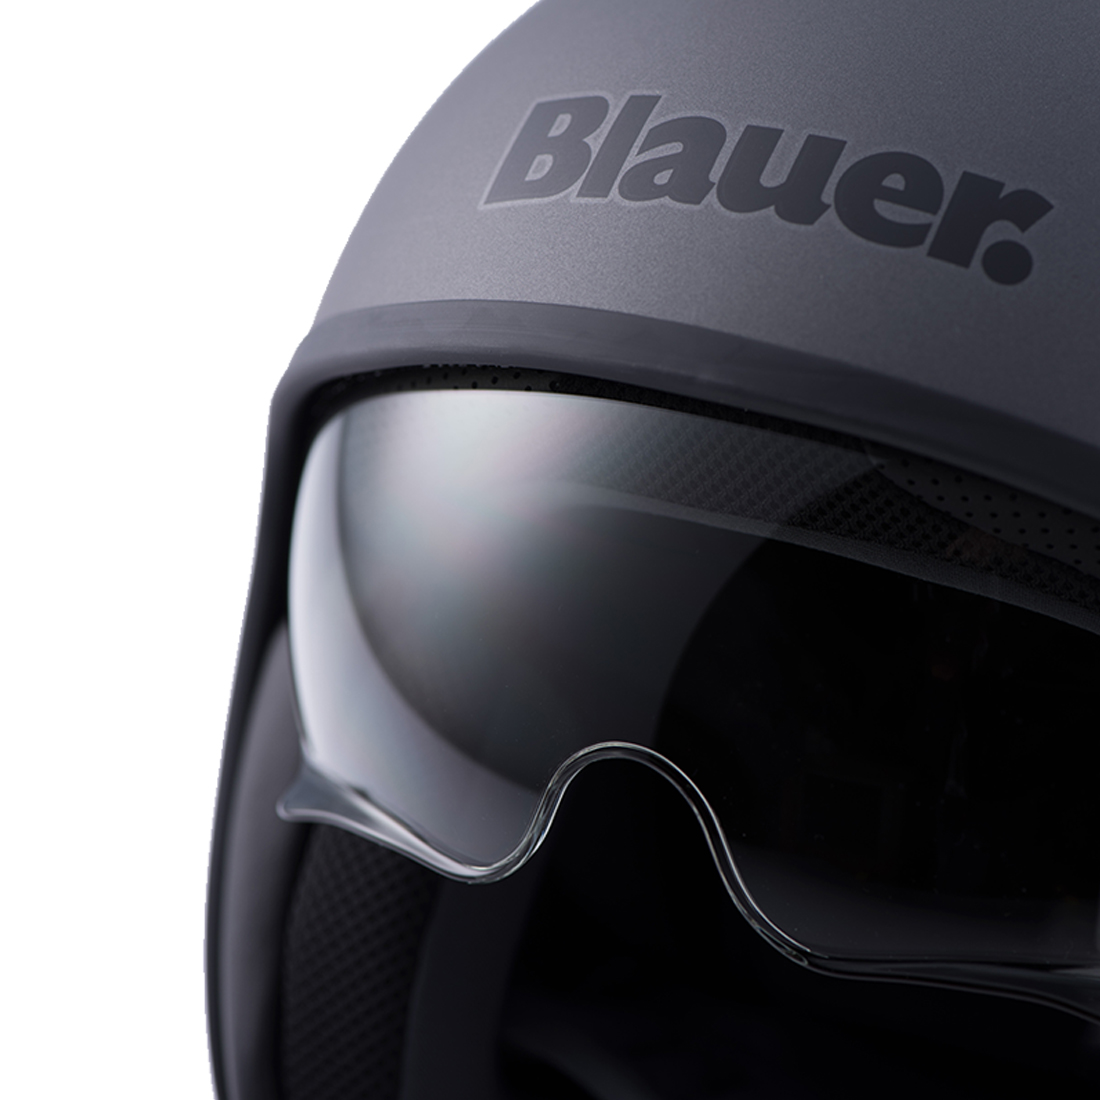 Steelbird Blauer Pilot ISI/ECE Certified Open Face Helmet (Monochrome Matt Titanium)